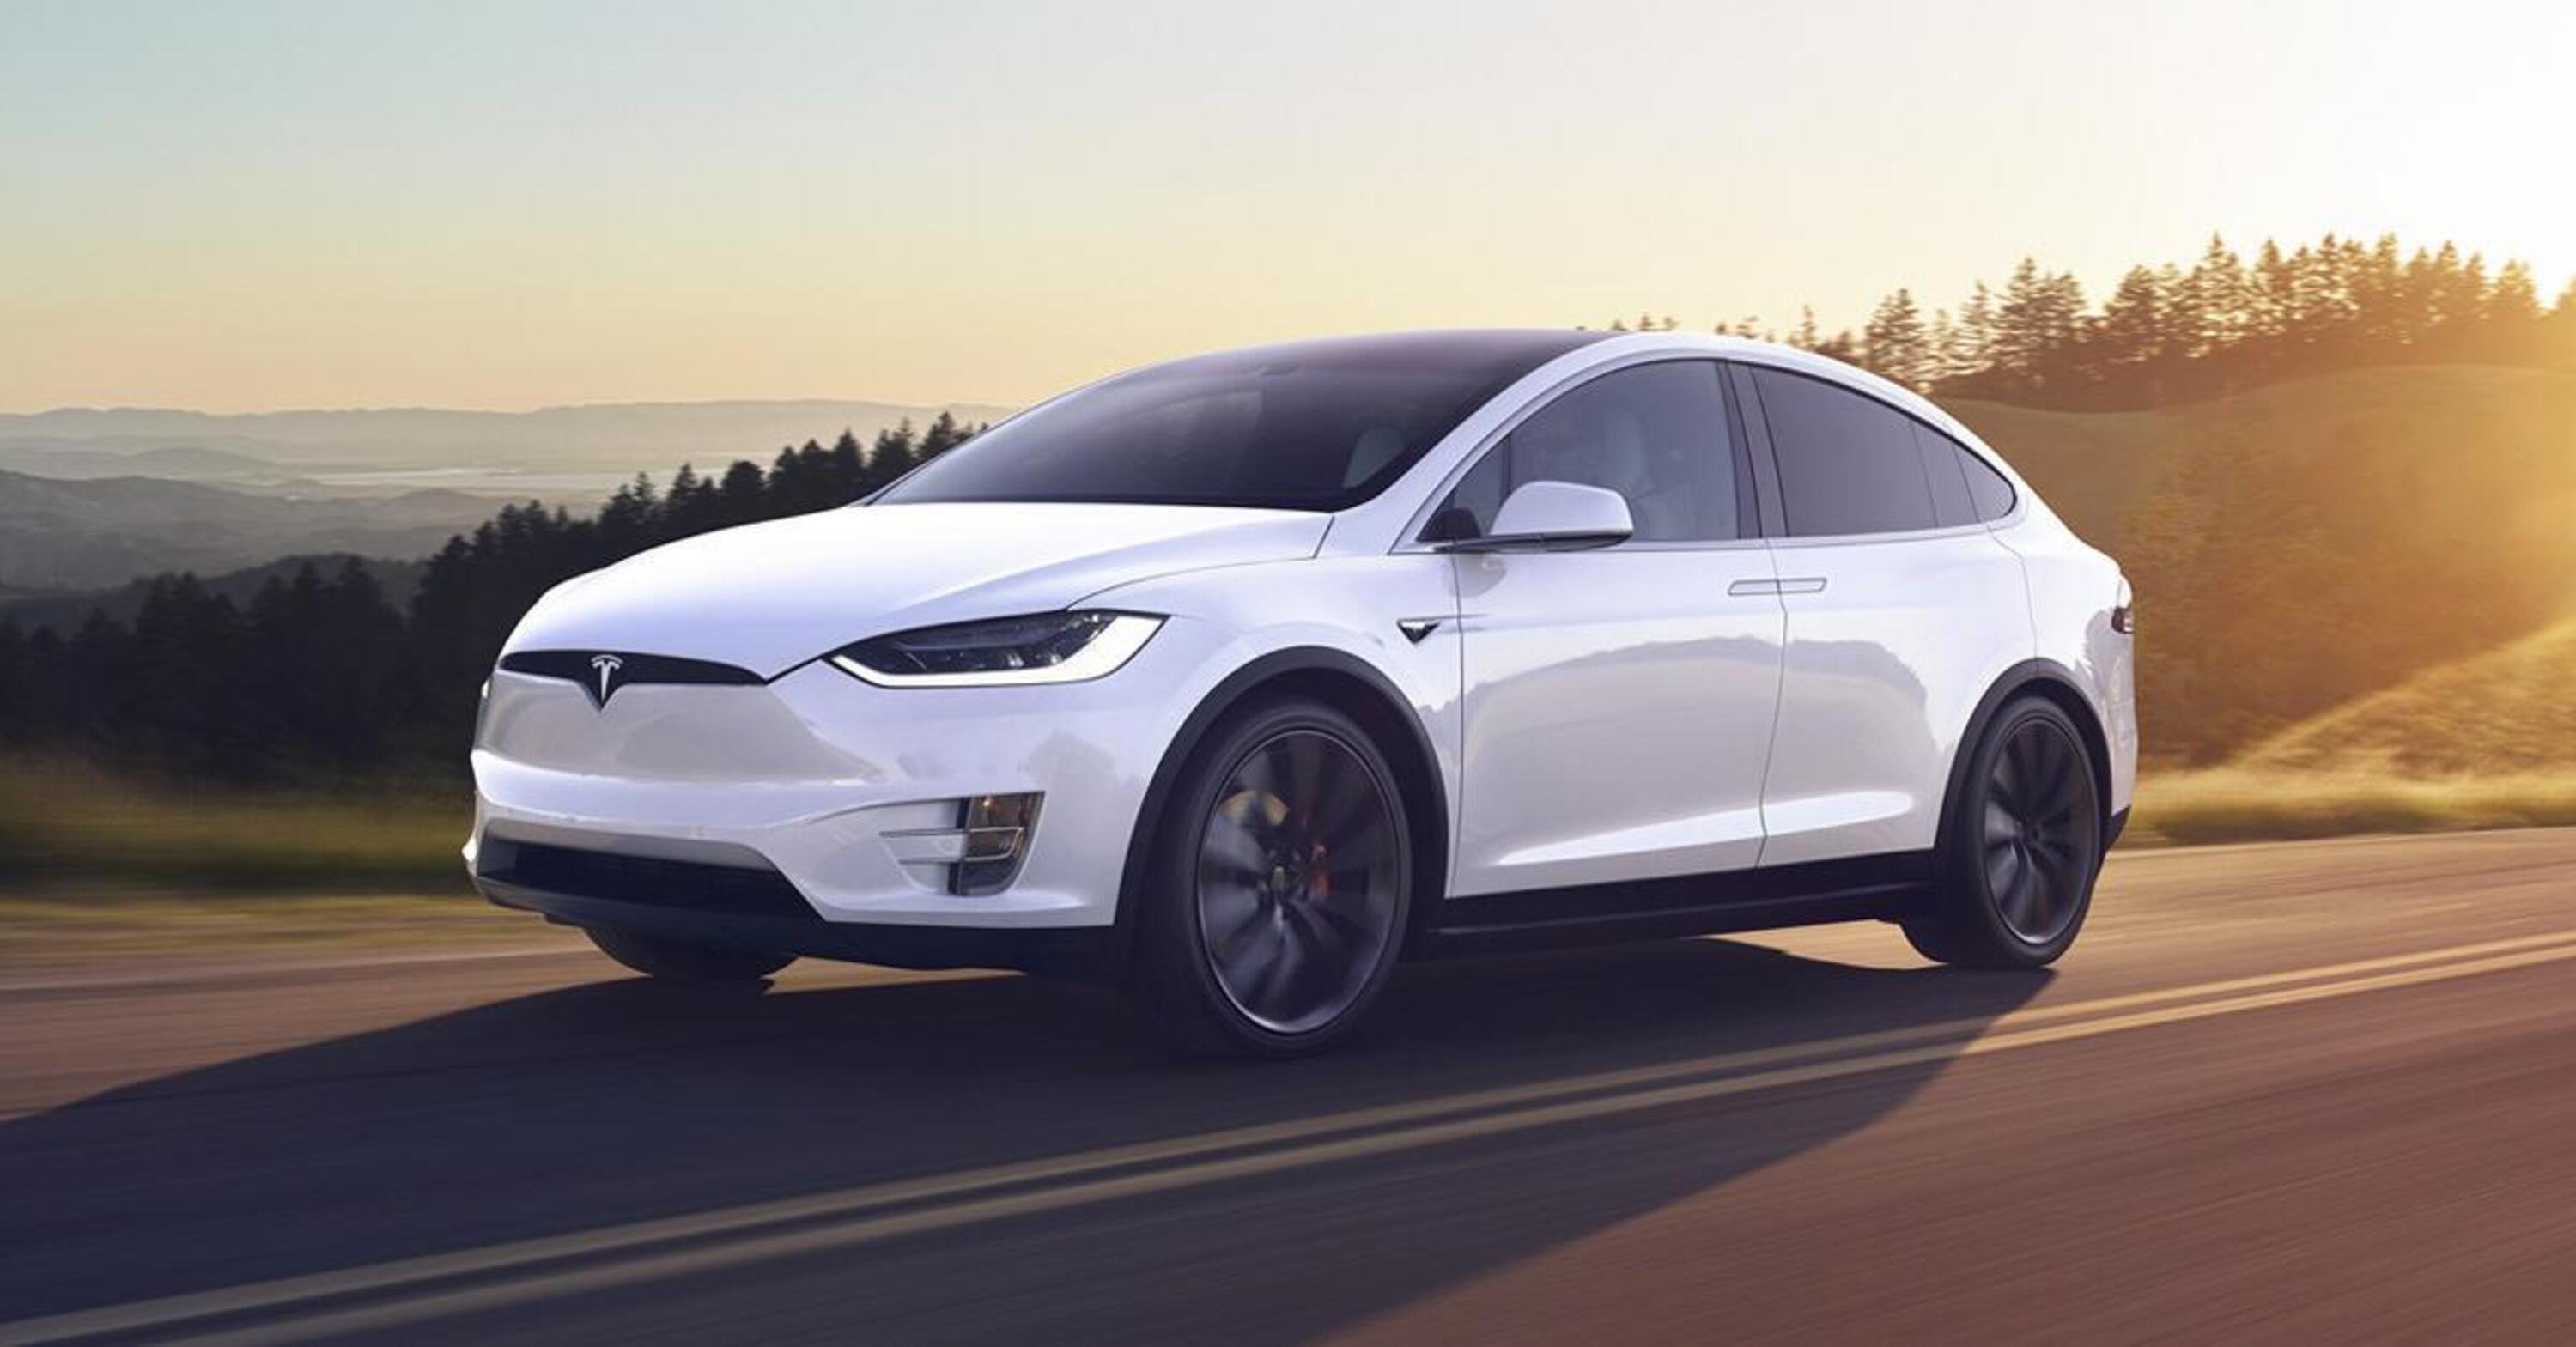 Tesla impazzita: negli USA ora aumentano i prezzi (Model S e Model X)